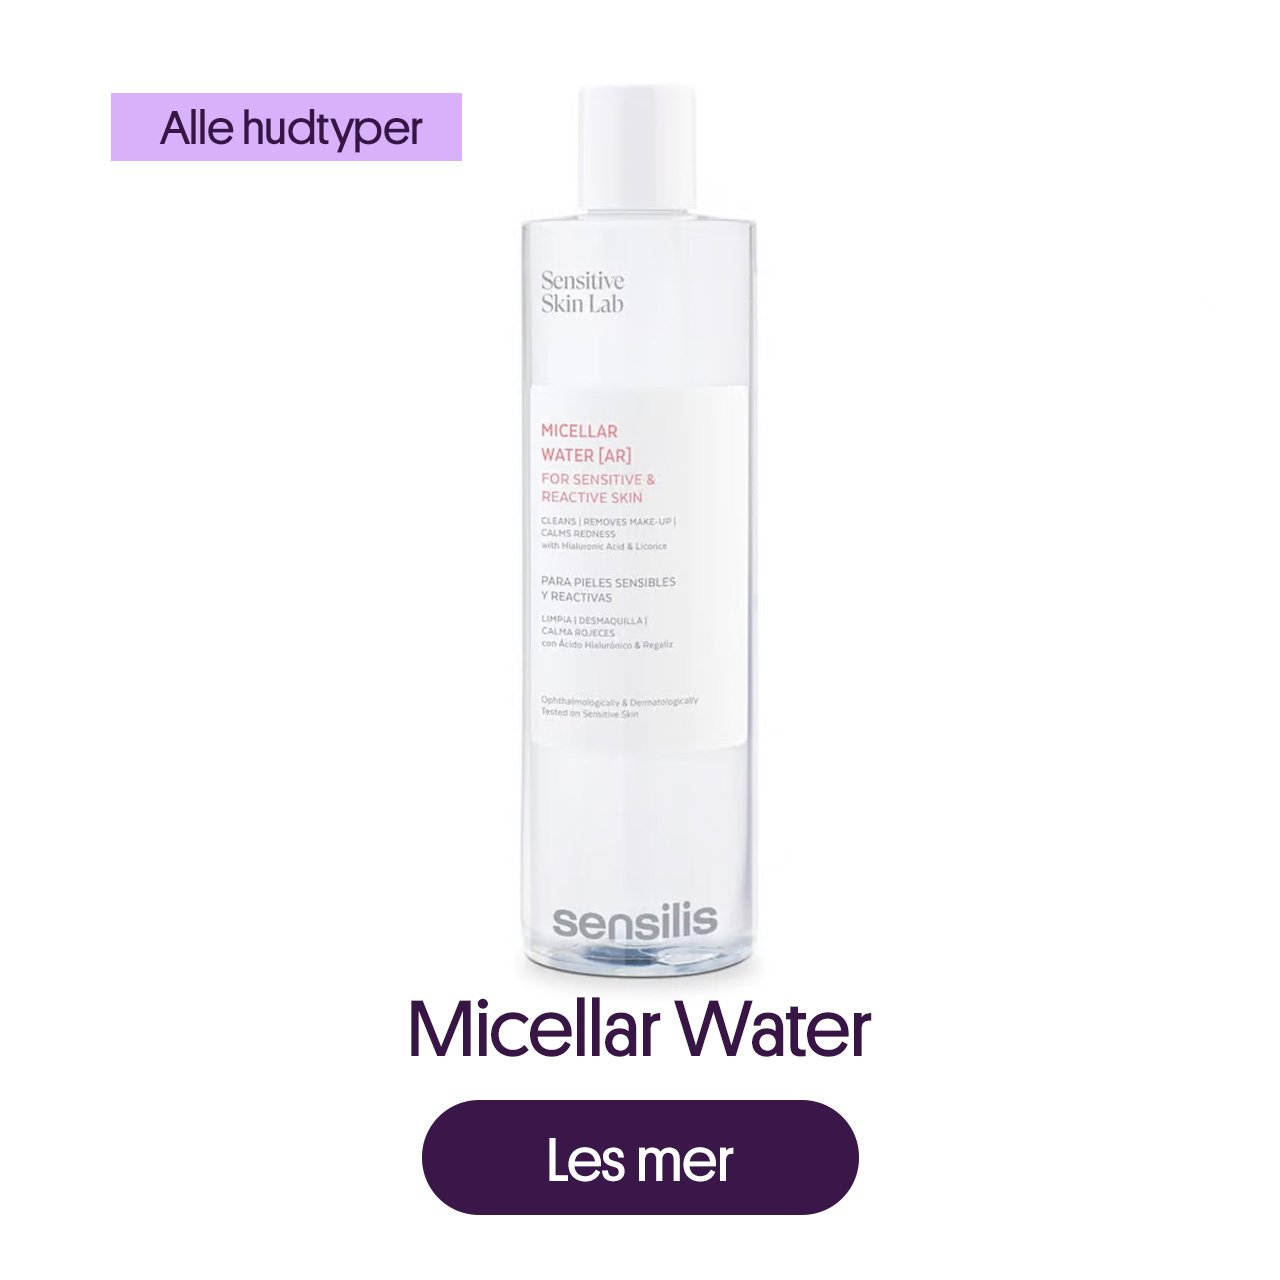 Sensilis Micellar Water